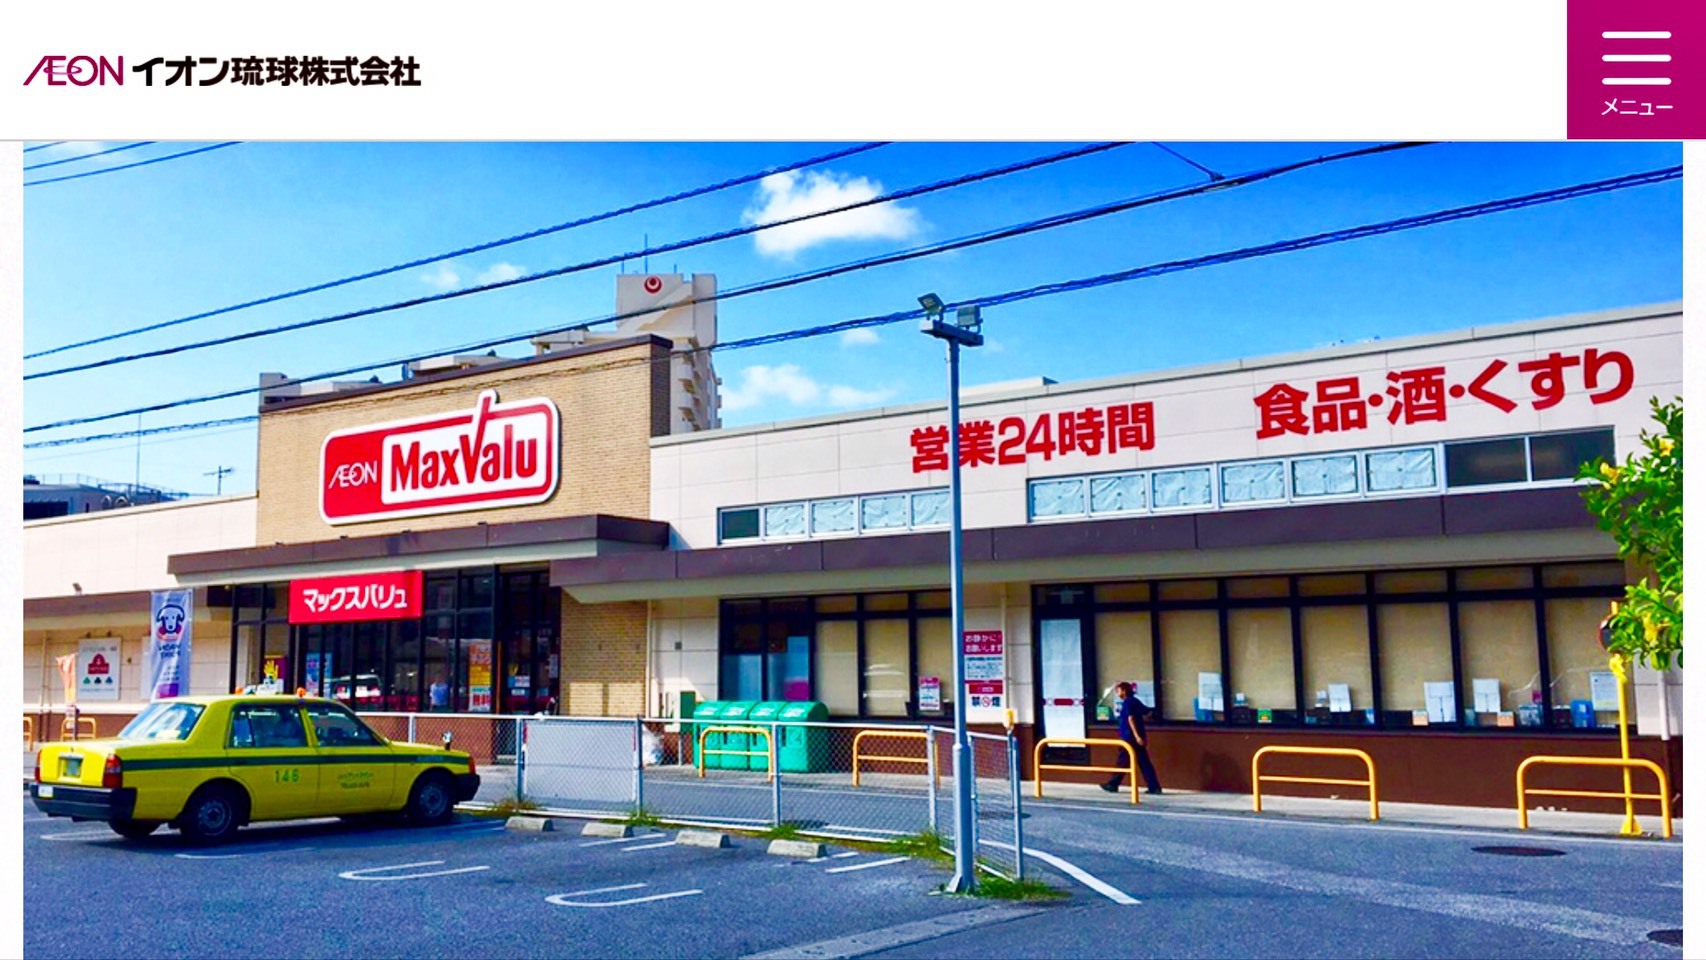 徒歩1分の場所にある24H営業のスーパーマーケット「Maxvalu」があります